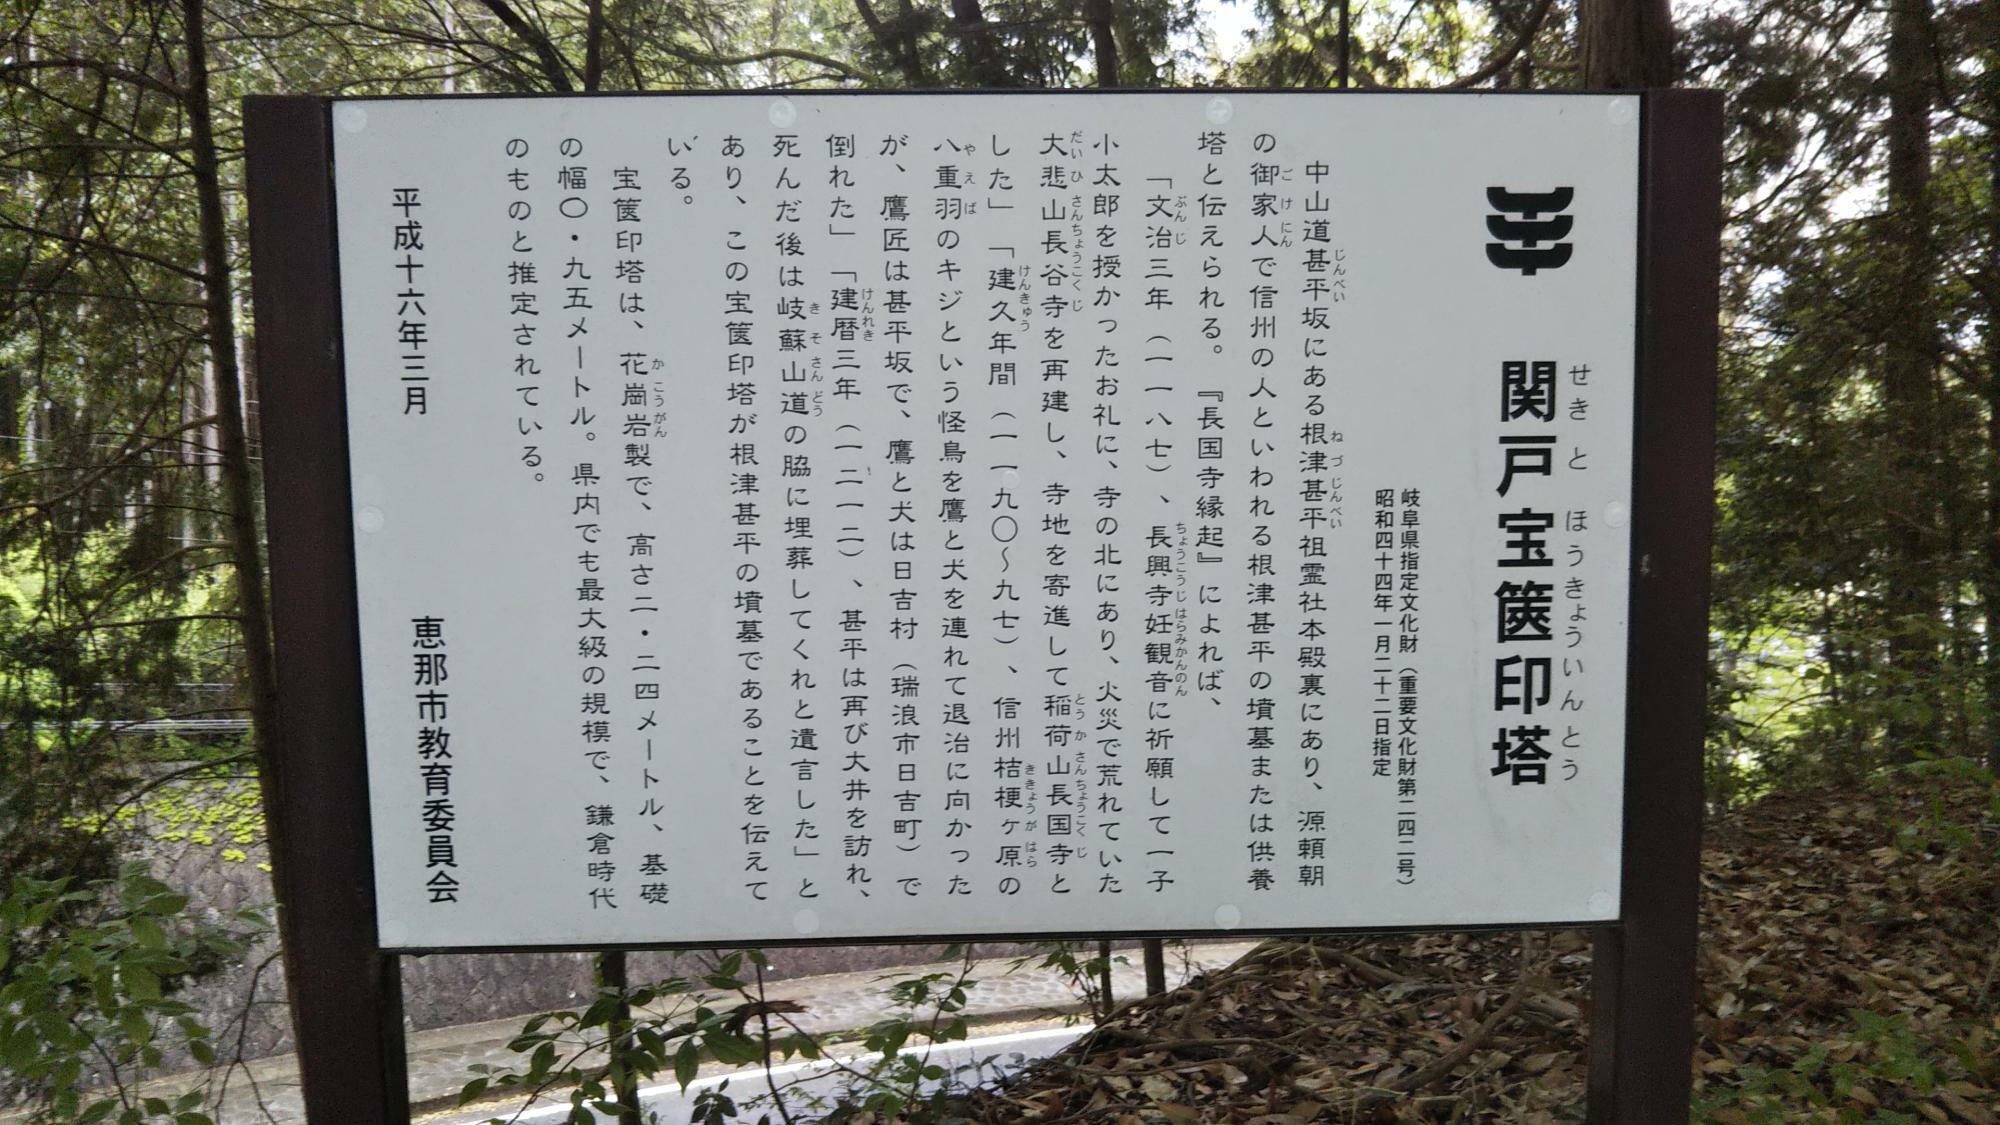 関戸宝篋印塔は鎌倉期につくられたものだそうで、宝篋塔としては岐阜県最大のもの